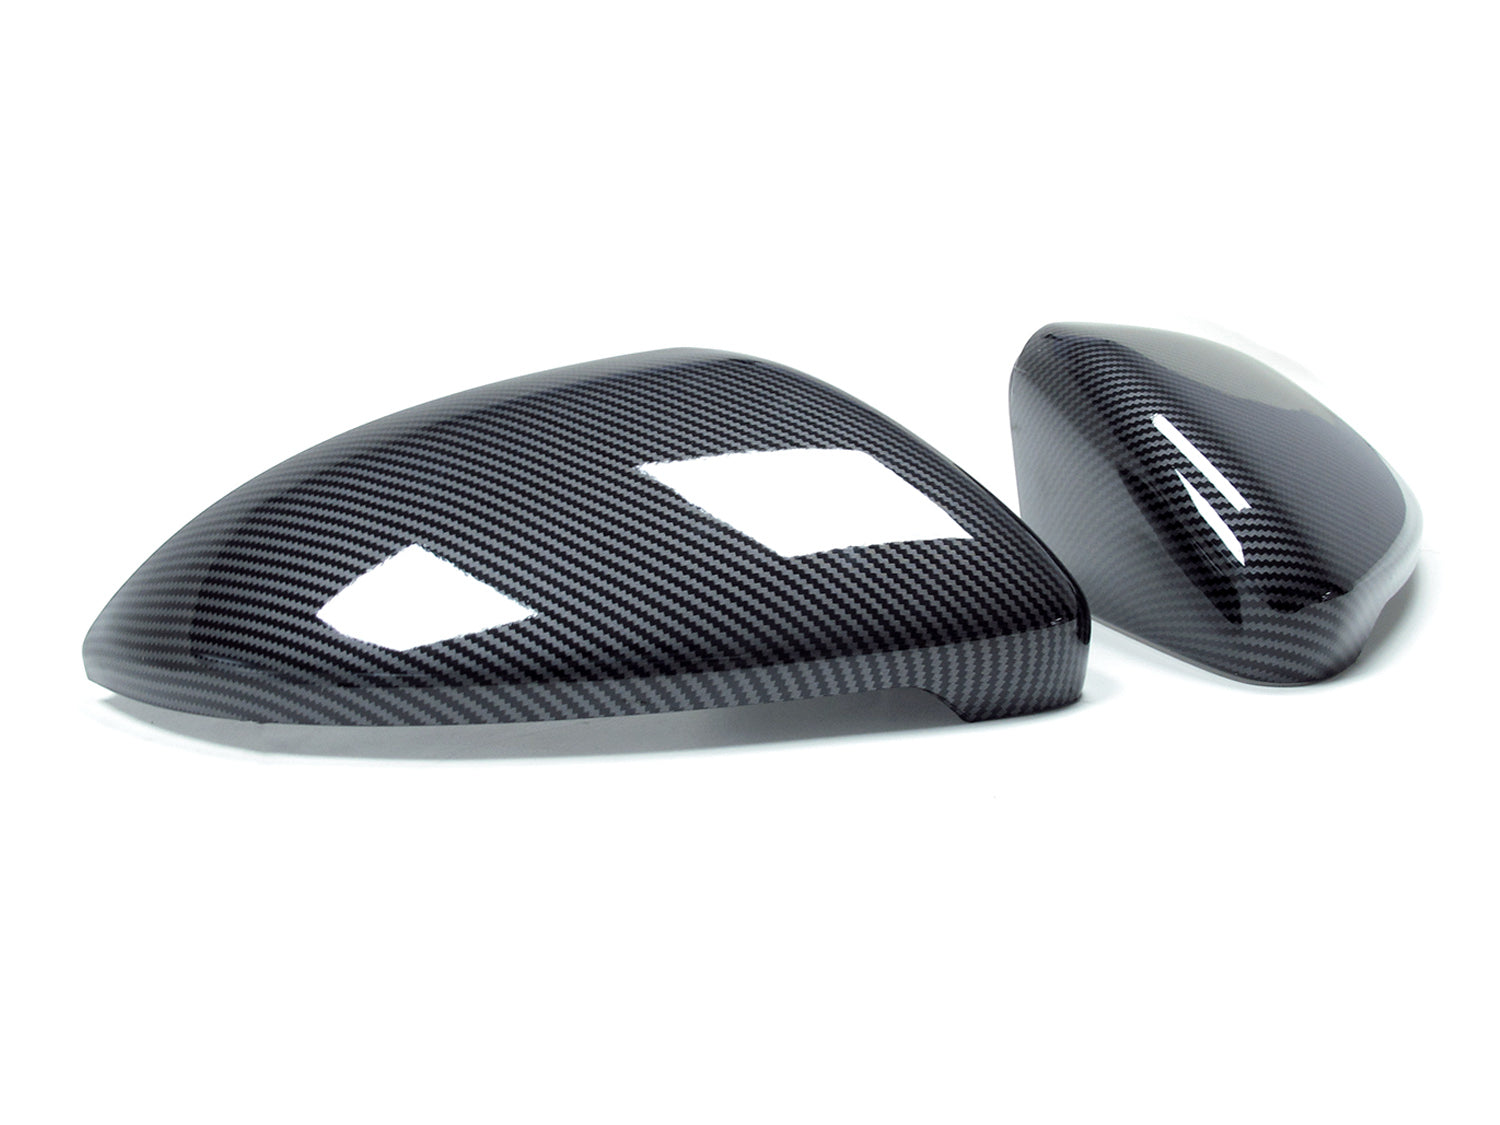 Carbon Spiegelkappen passend für Golf 8 GTI/GTD/R, 279,99 €